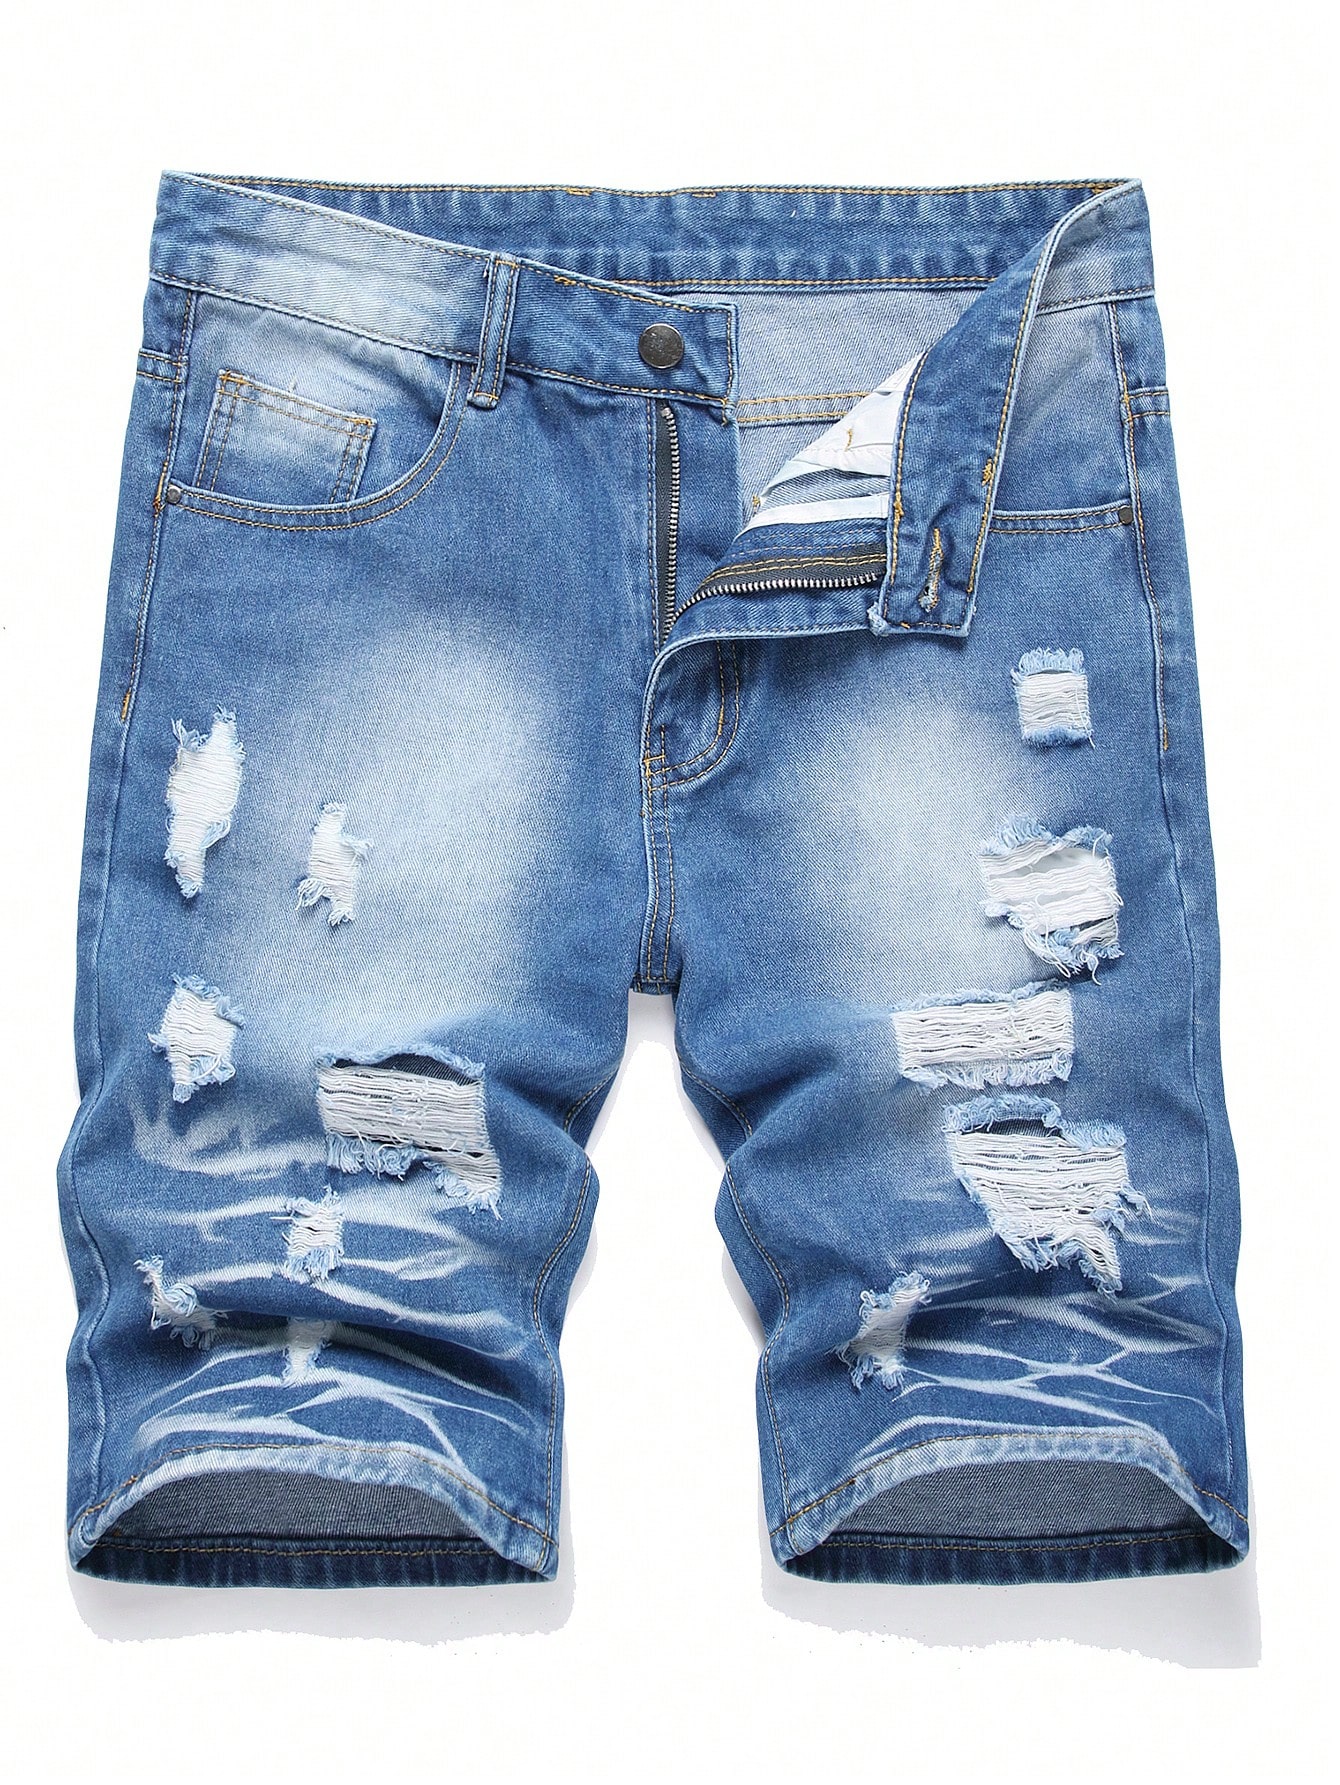 Мужские джинсовые шорты с потертостями в европейском и американском стиле, легкая стирка фото